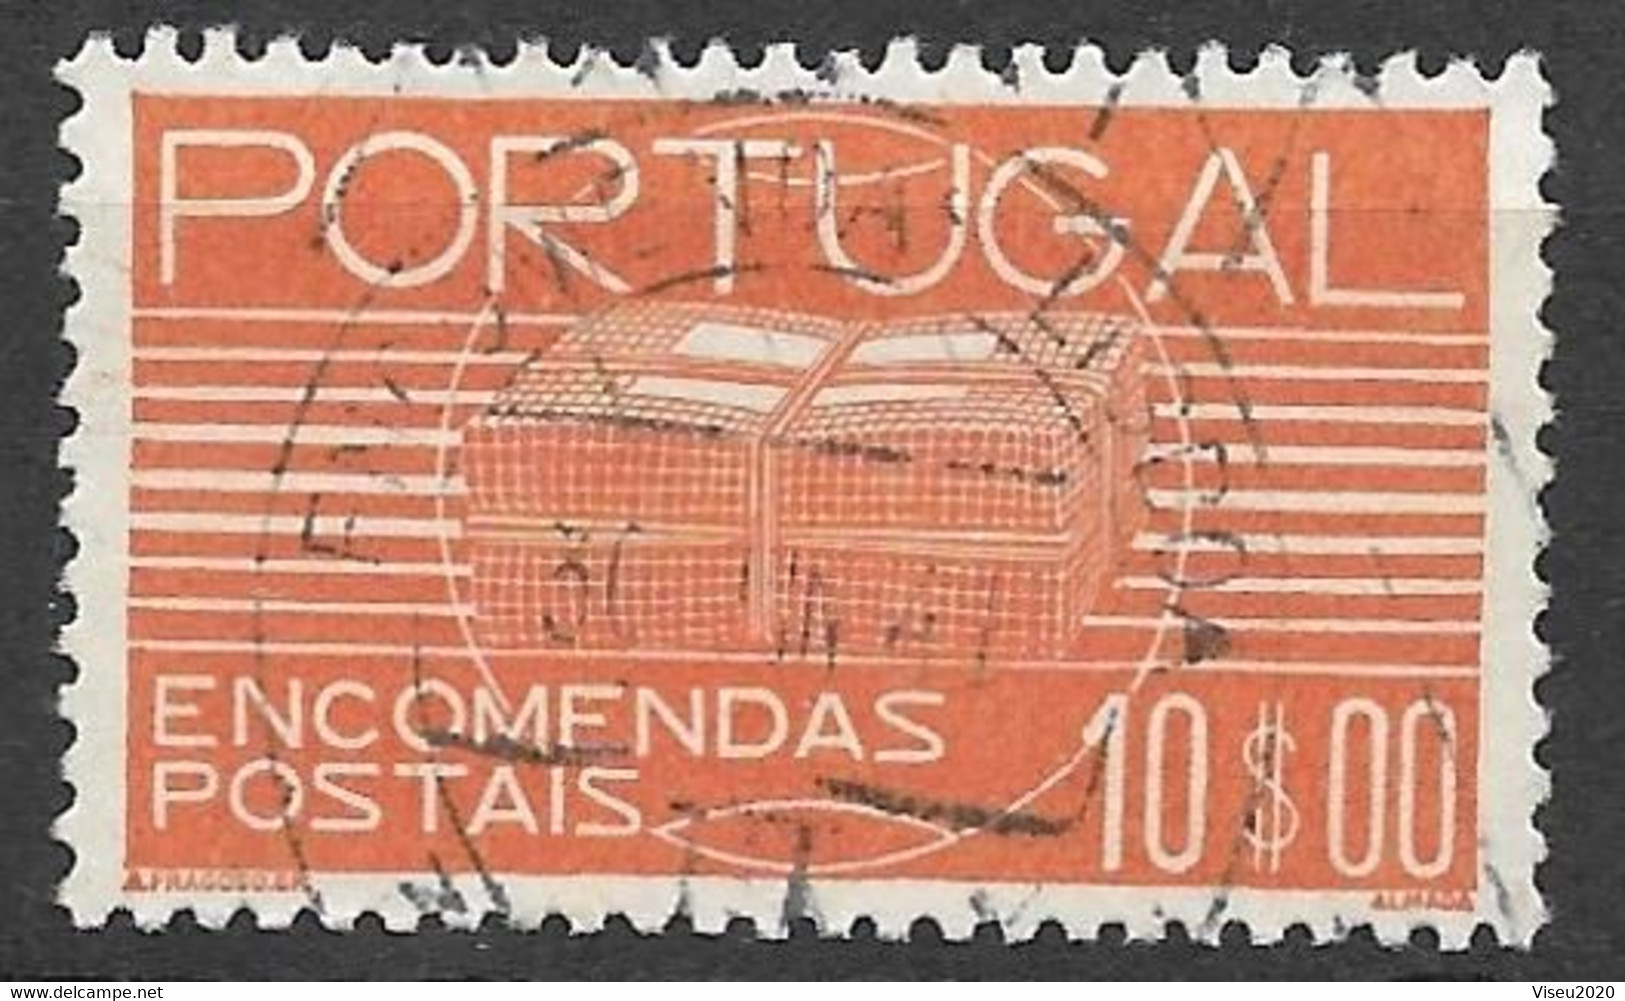 Portugal - 1936 Encomendas Postais - 10$00 - Afinsa 25 - Usado